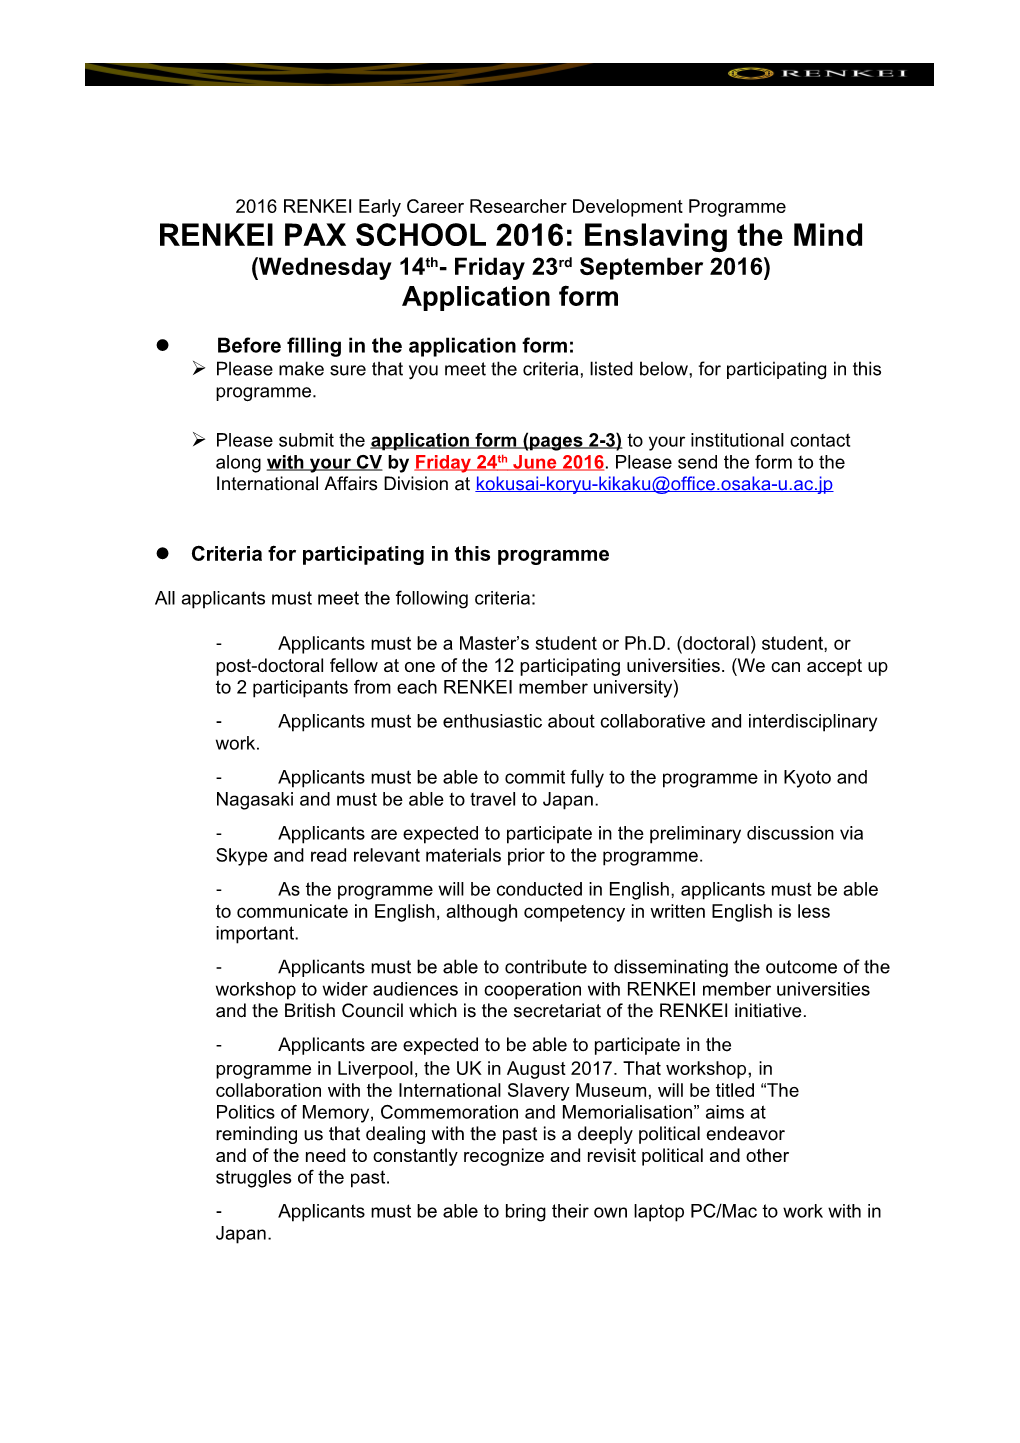 RENKEI PAX SCHOOL 2016: Enslaving the Mind